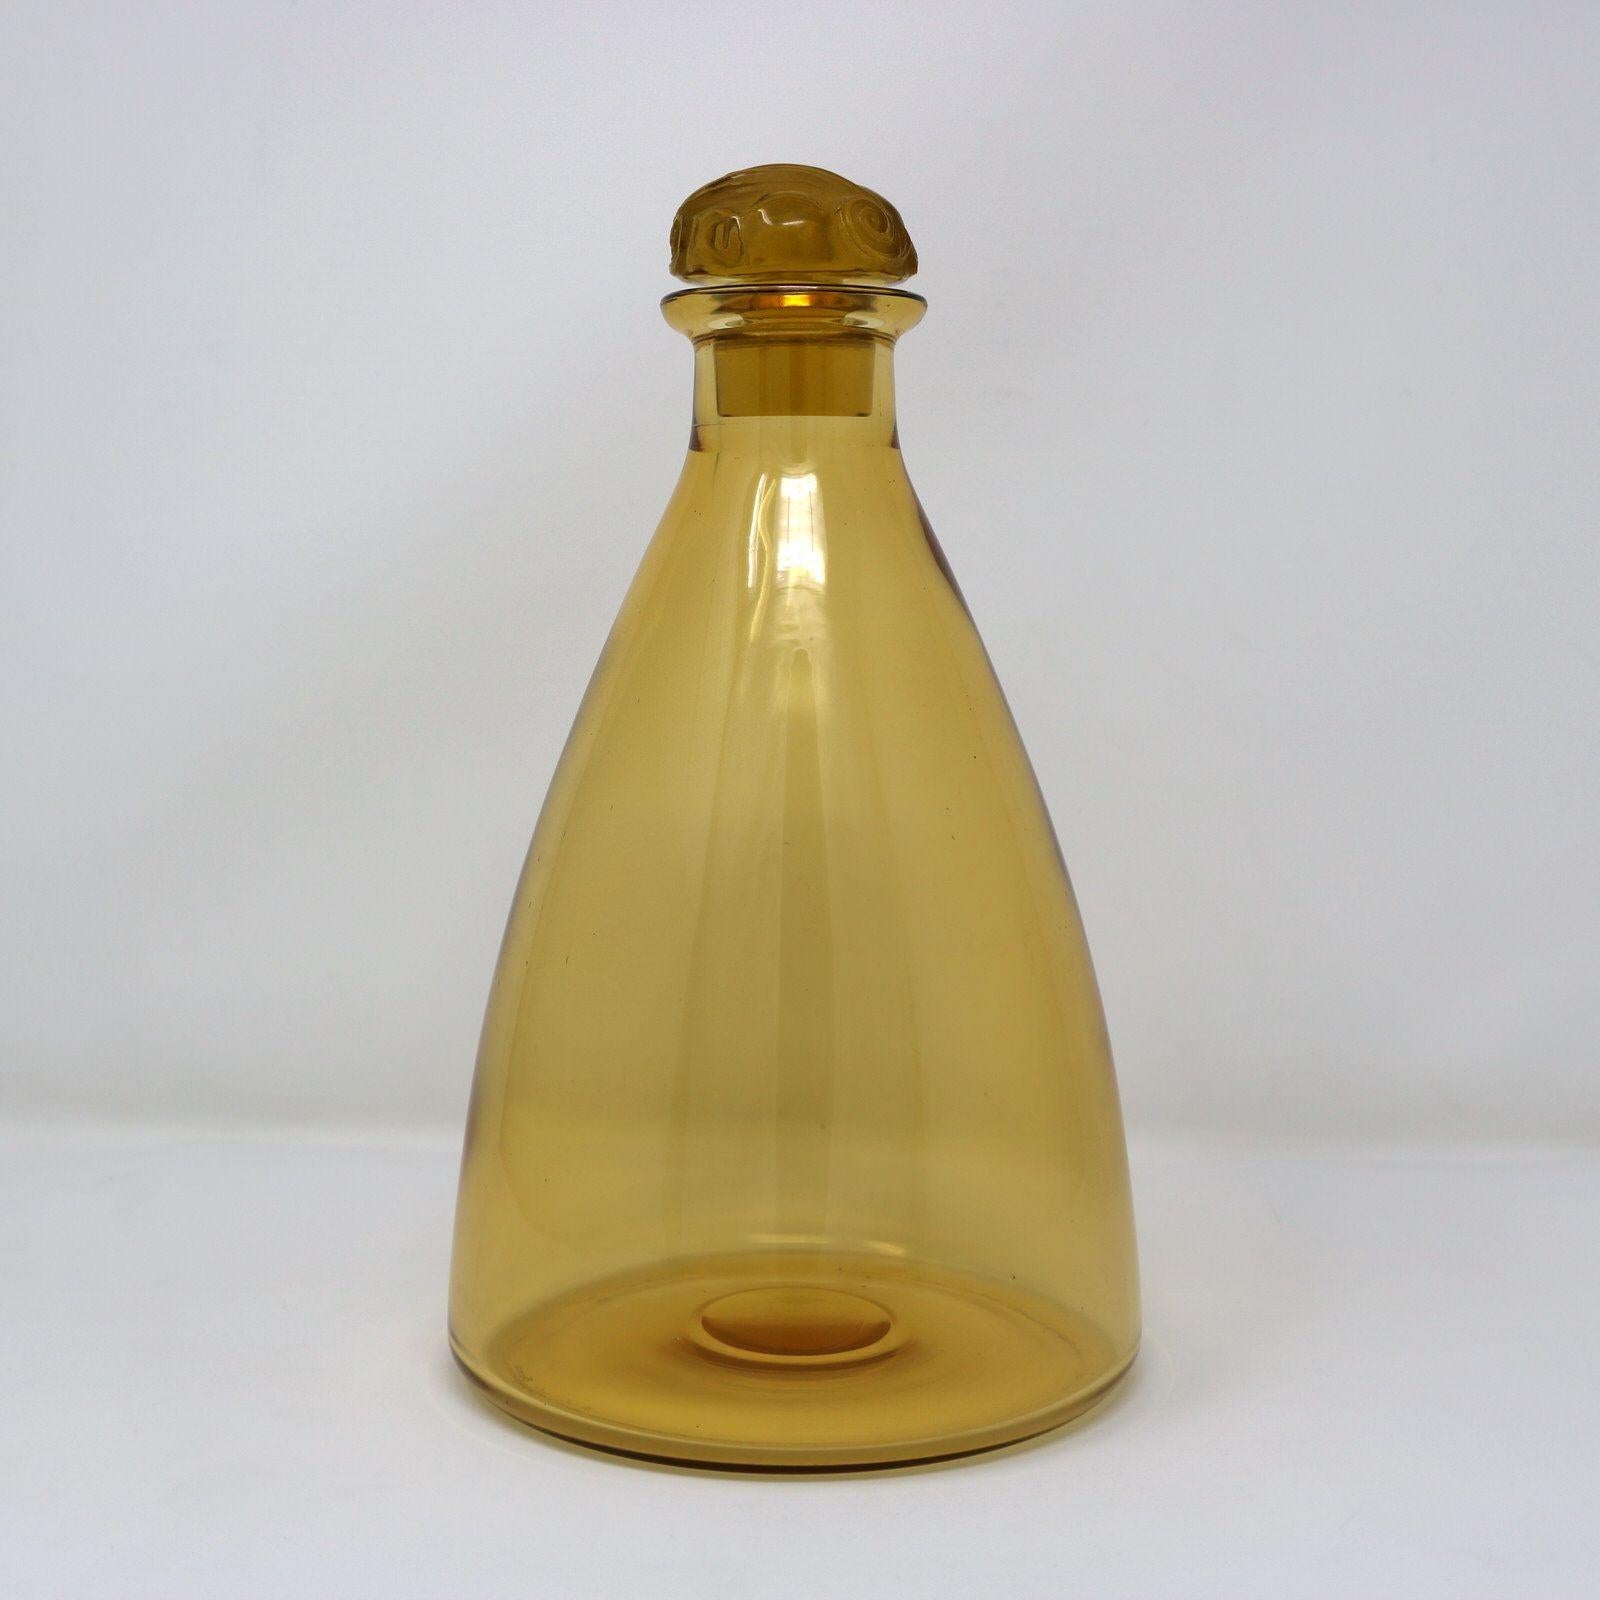 Rene Lalique gelb-bernsteinfarbenes Glas 'Marienthal' Karaffe. Hat eine konisch geformte Flasche. Der klare und mattierte Glasstopfen ist mit Weintrauben und Ranken verziert. Eingeschriebene Herstellermarke, 